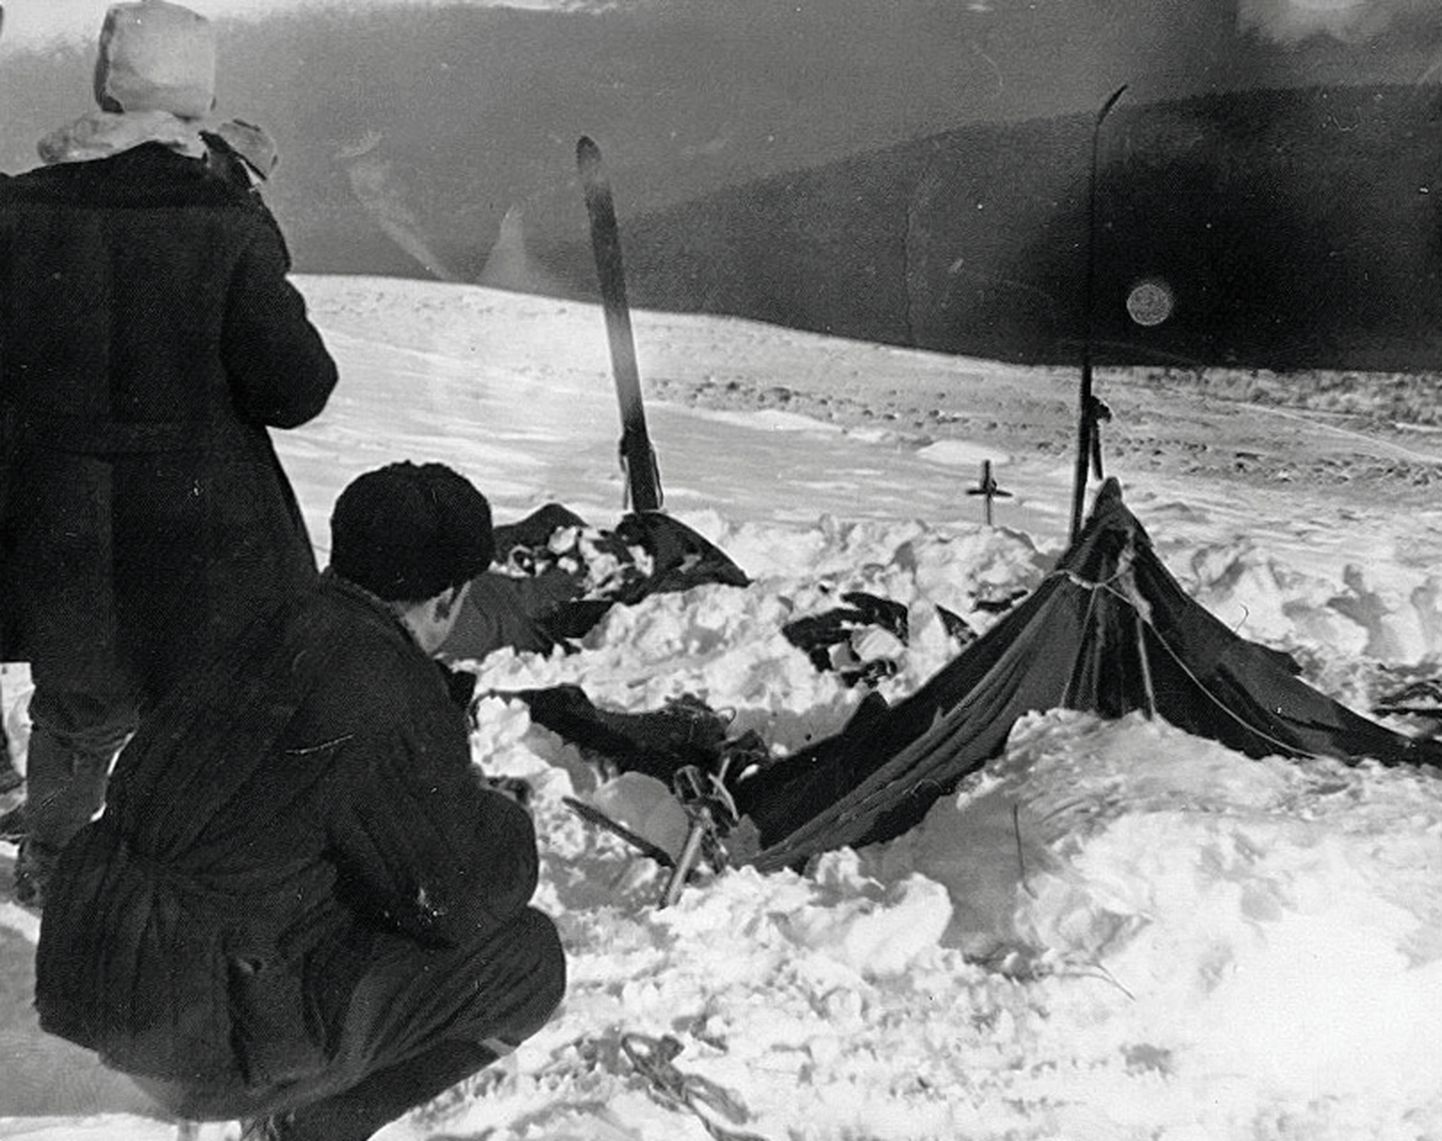 Vene päästjad 1959. aastal noorte matkajate telkla juures.